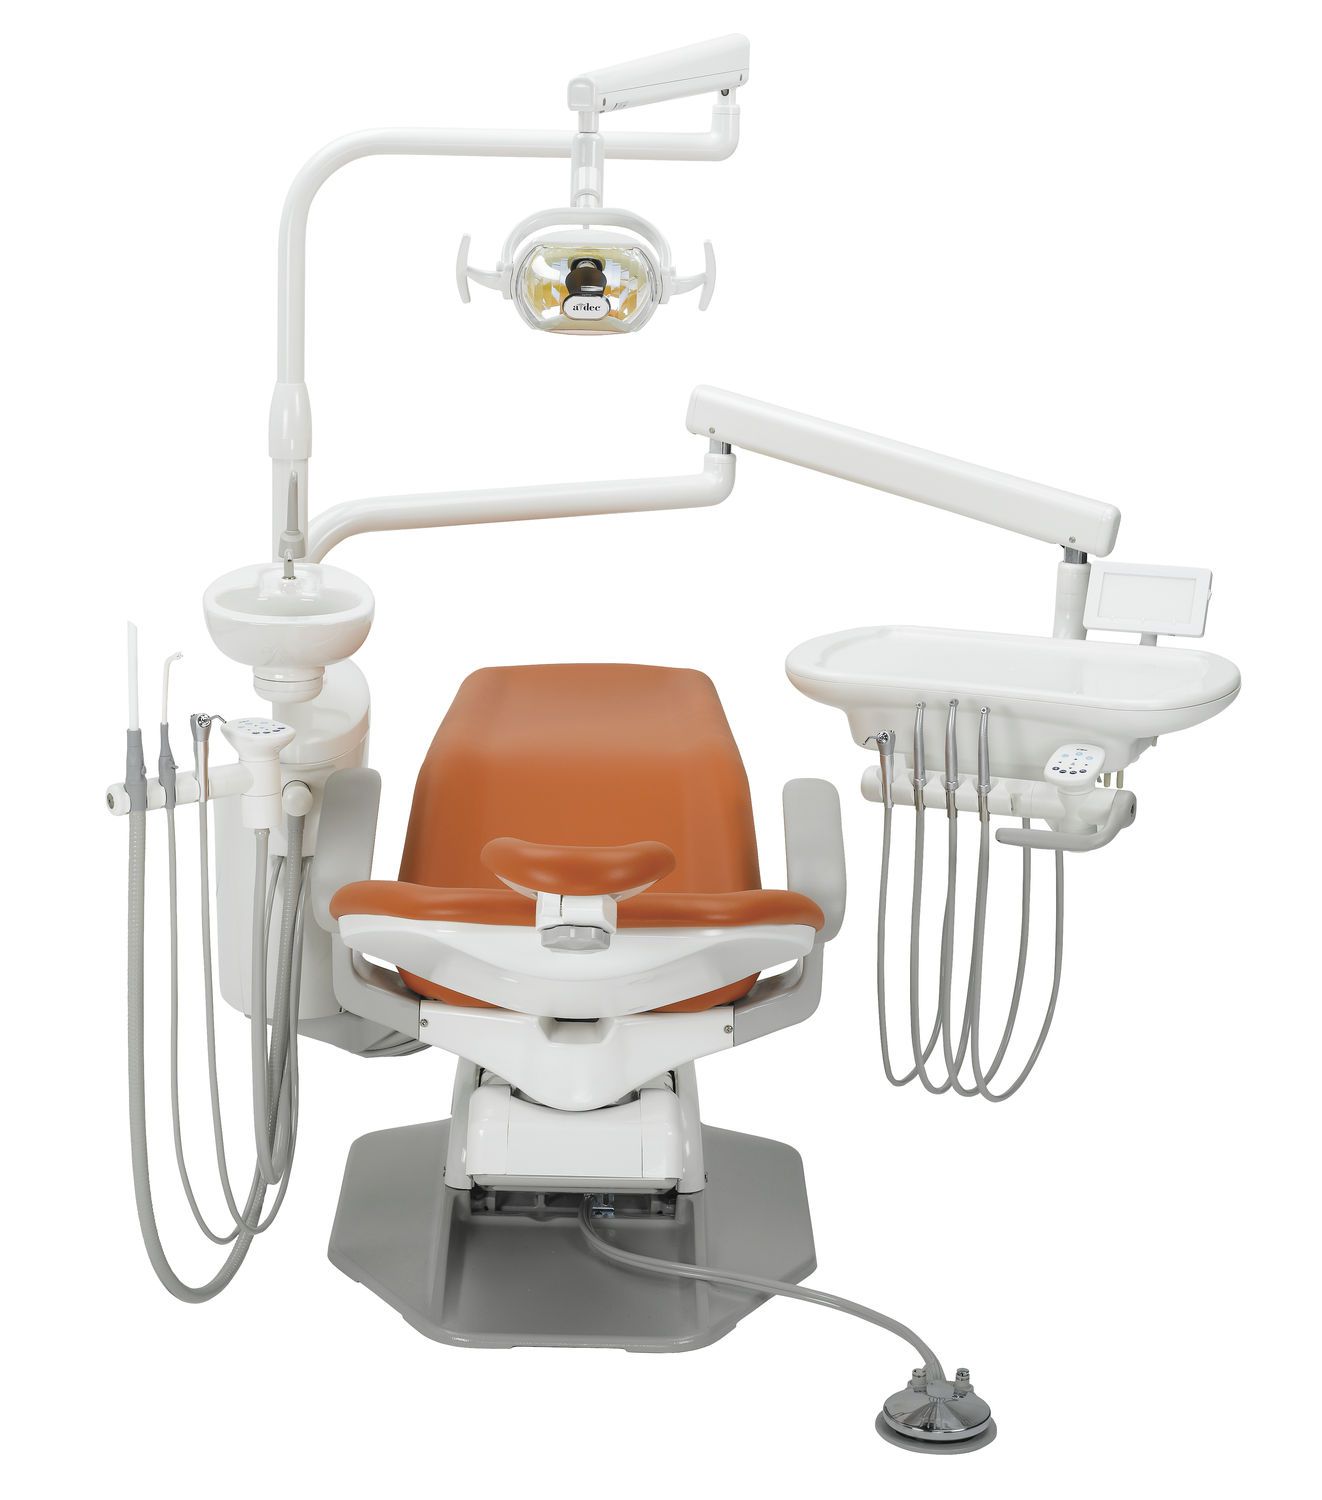 Dental treatment unit with hydraulic chair A-dec 200 A-dec